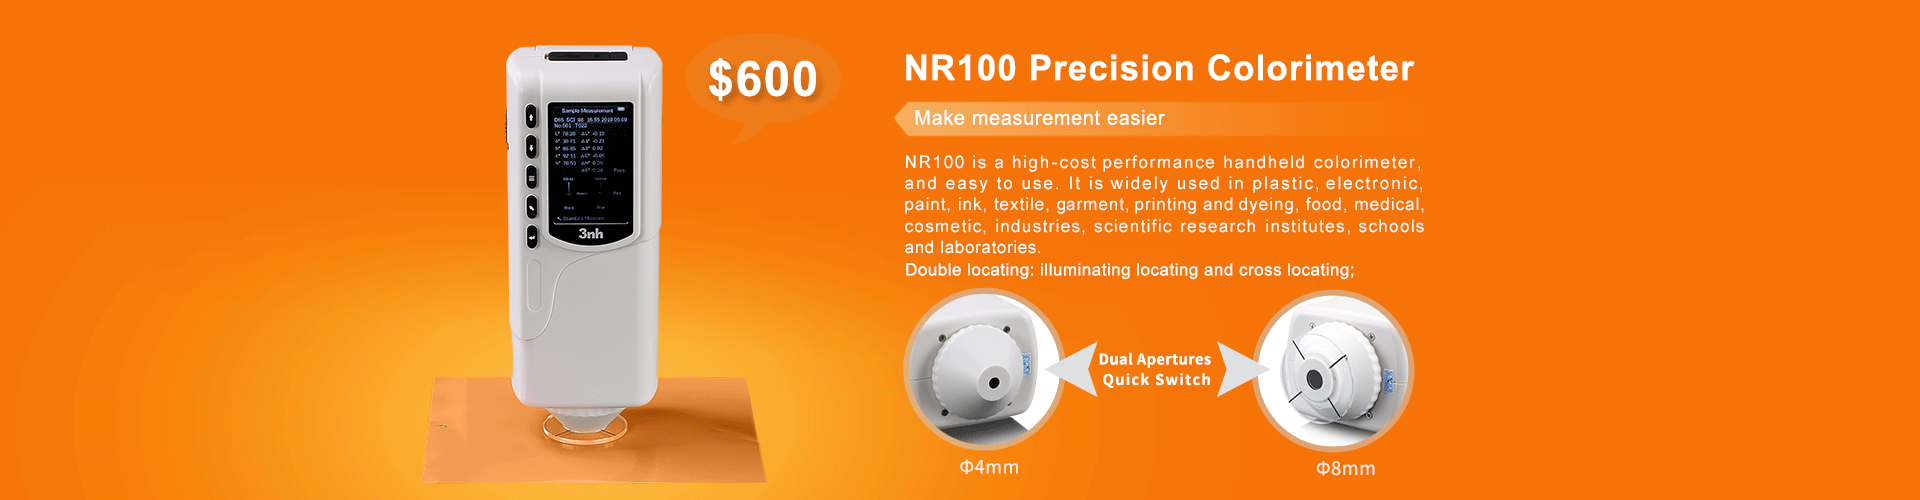 NR100 Precision Colorimeter